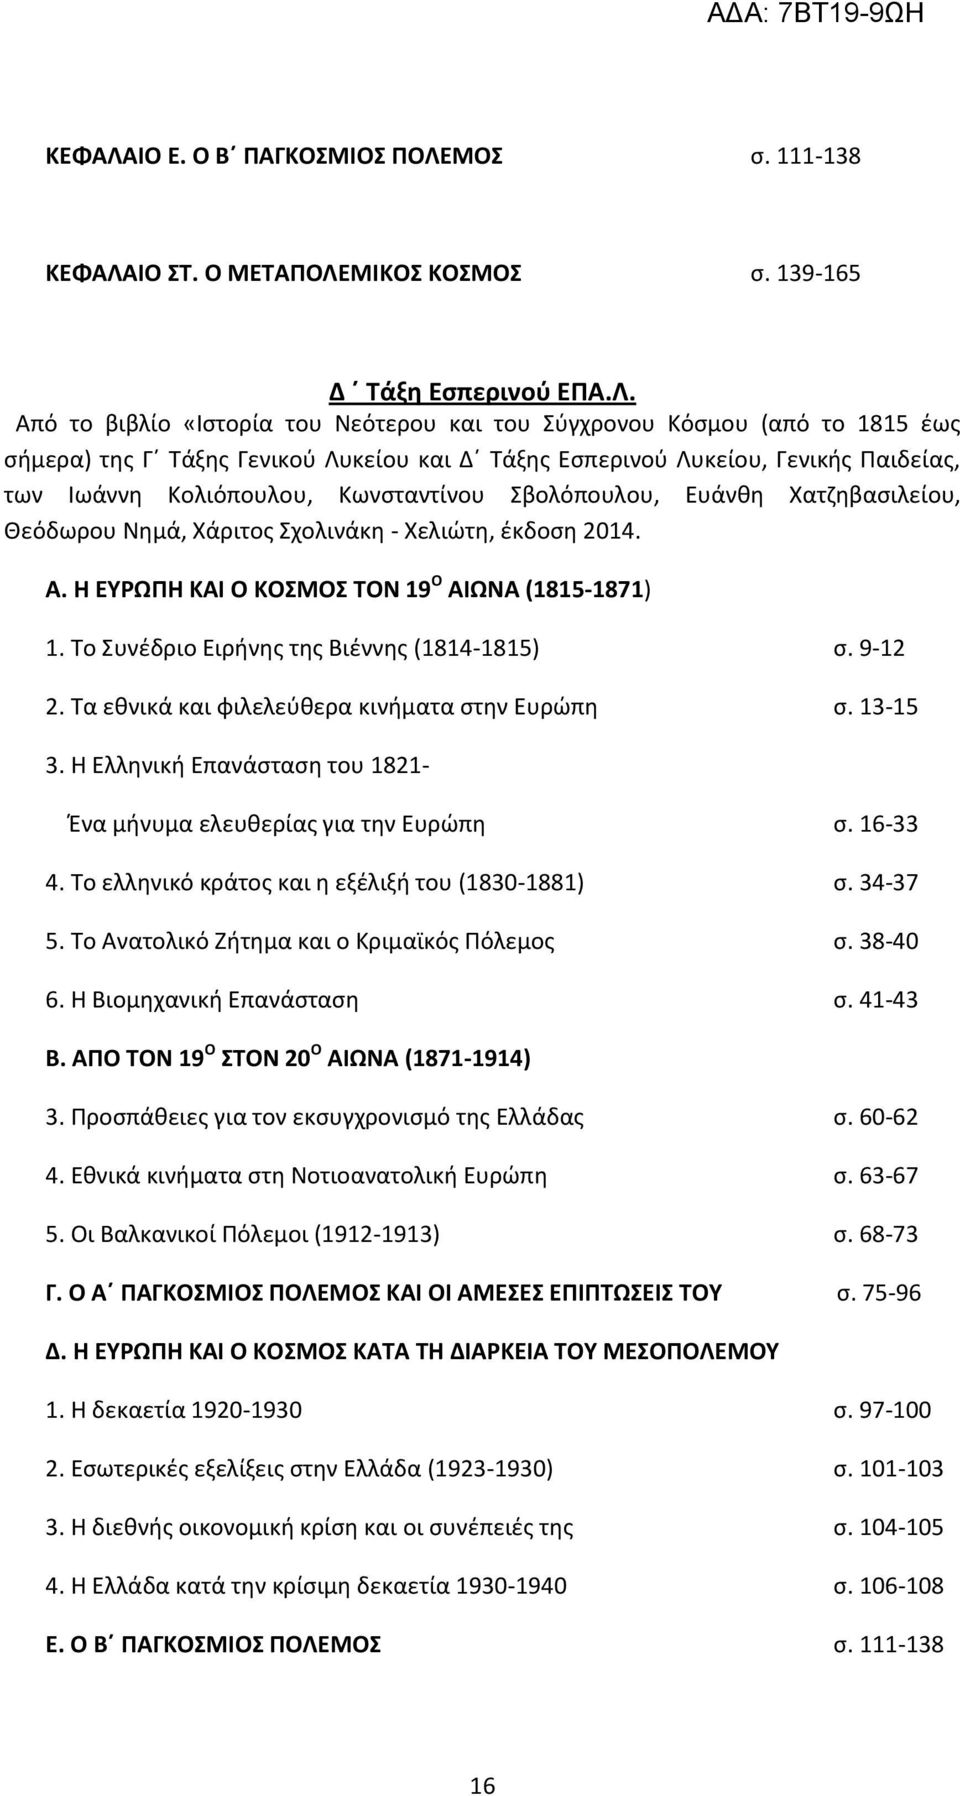 ΜΟΣ σ. 111-138 ΙΟ ΣΤ. Ο ΜΕΤΑΠΟΛΕ